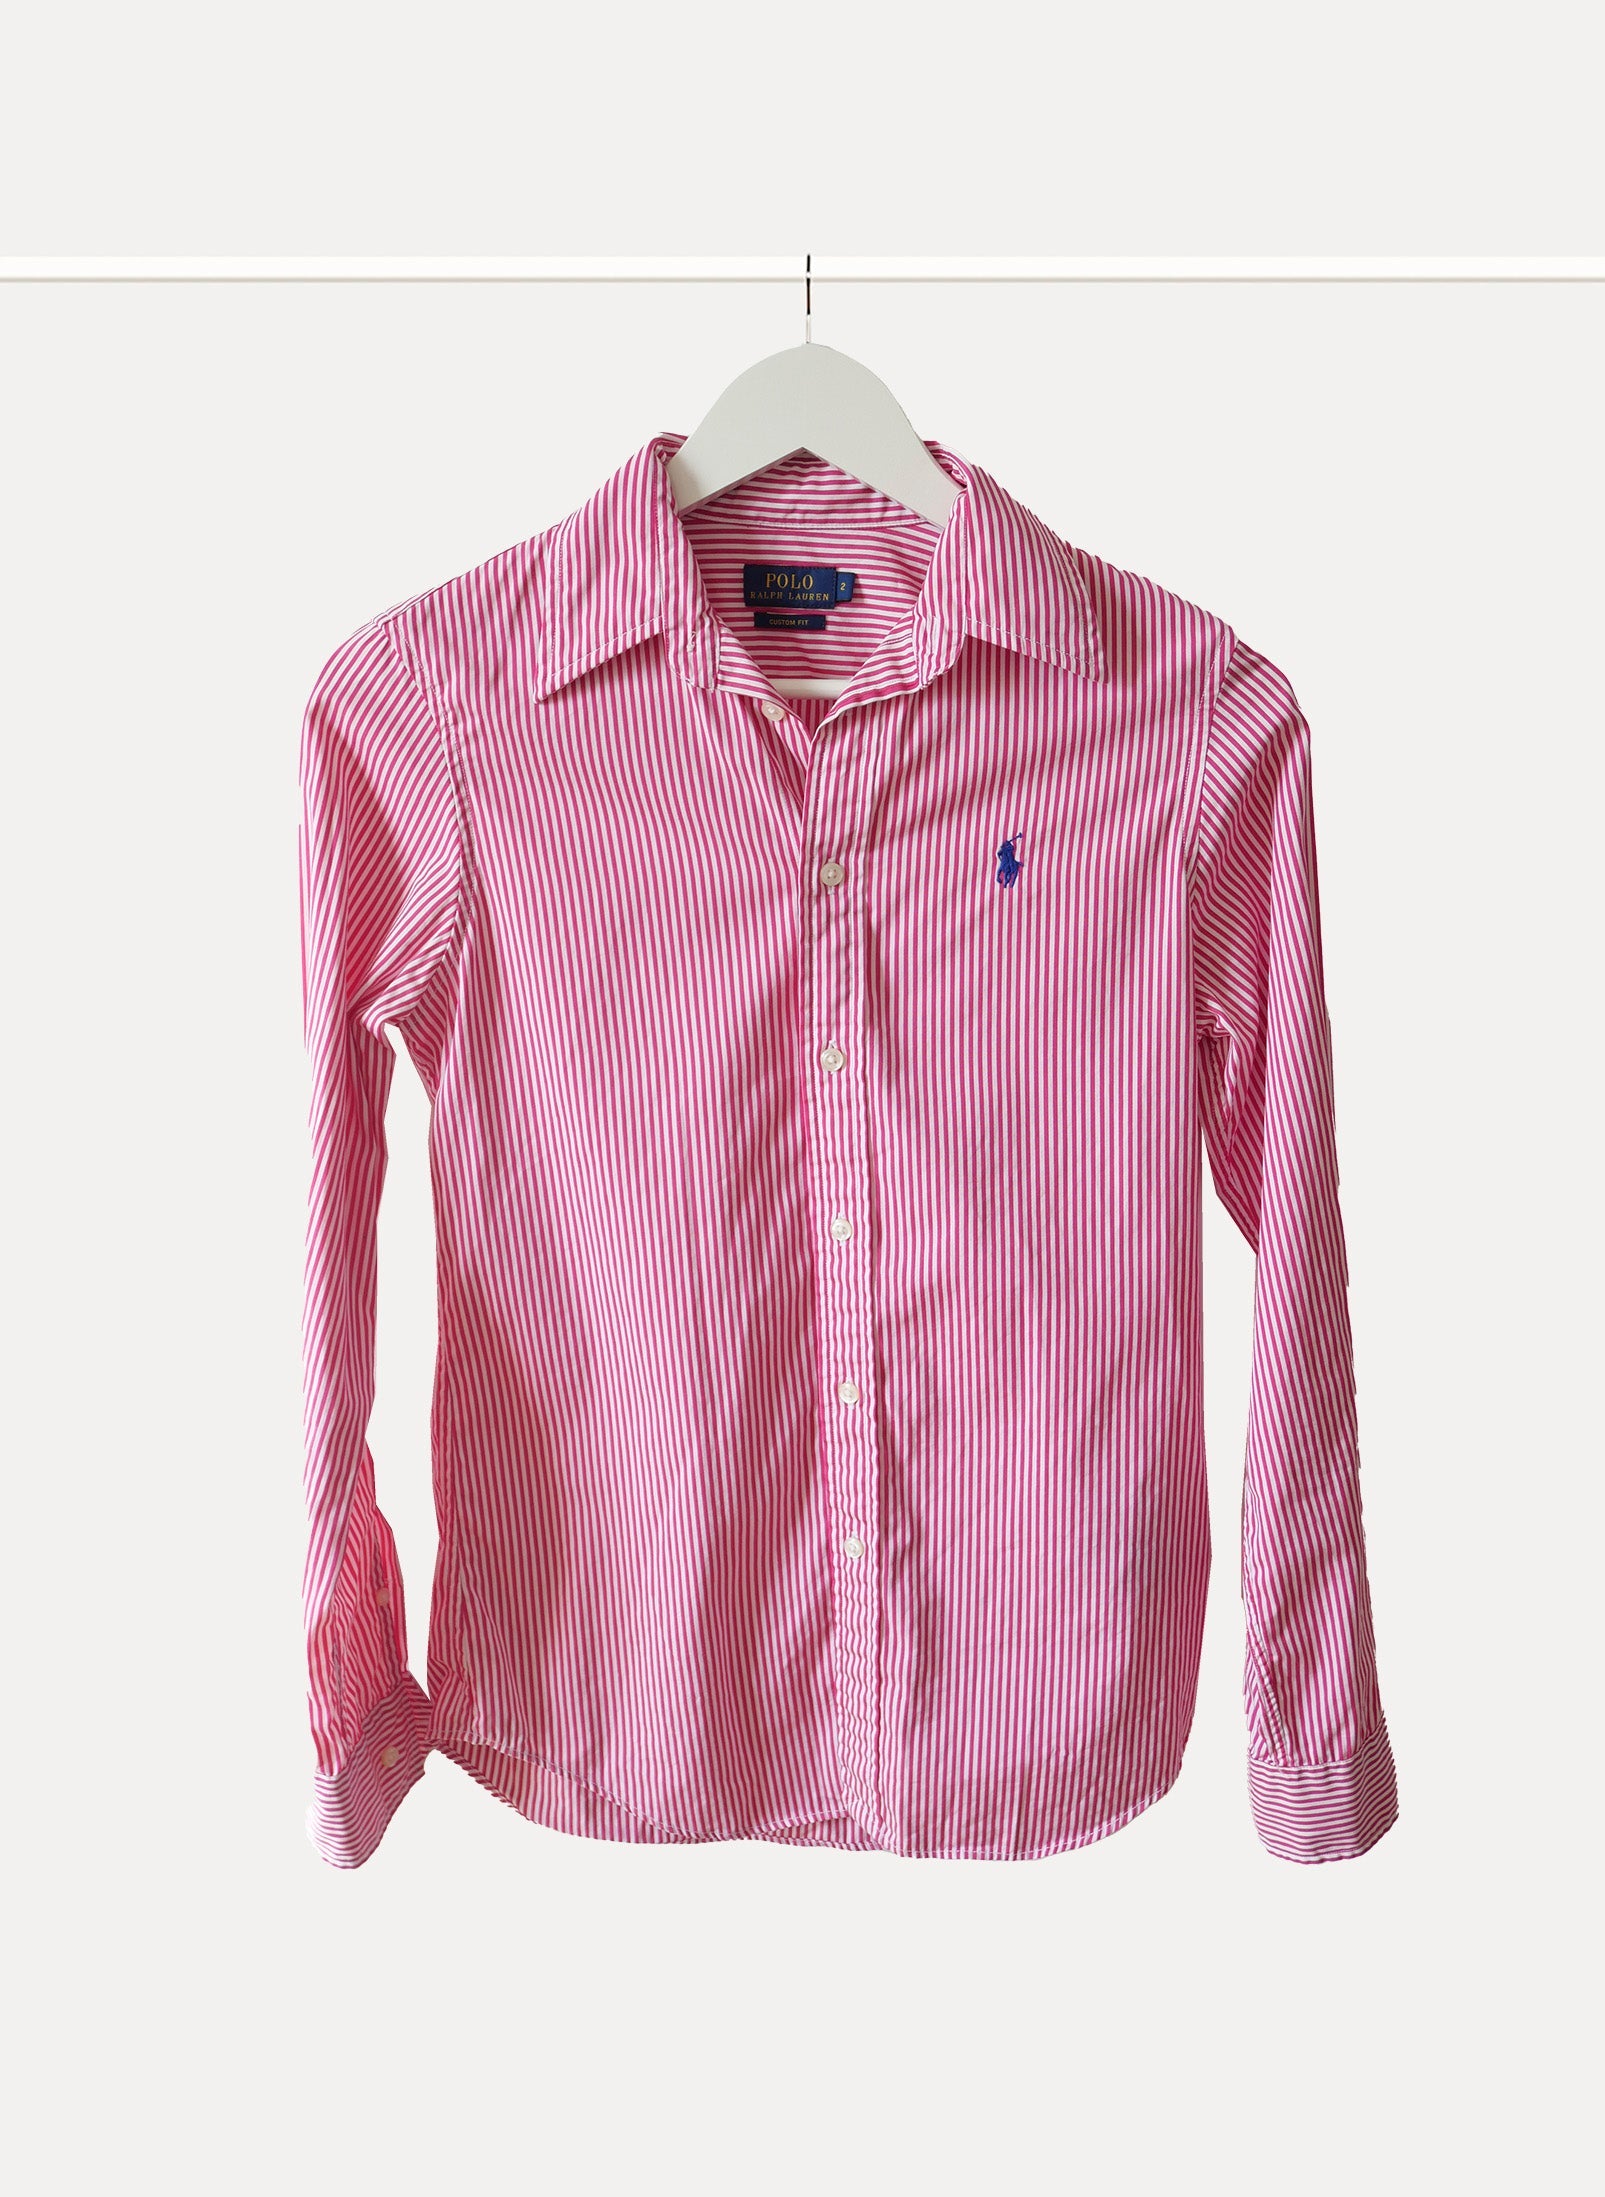 Women's Shirt RALPH LAUREN White, Pink | CIRCULAR CLOTHING PARIS – Circular  Clothing Paris